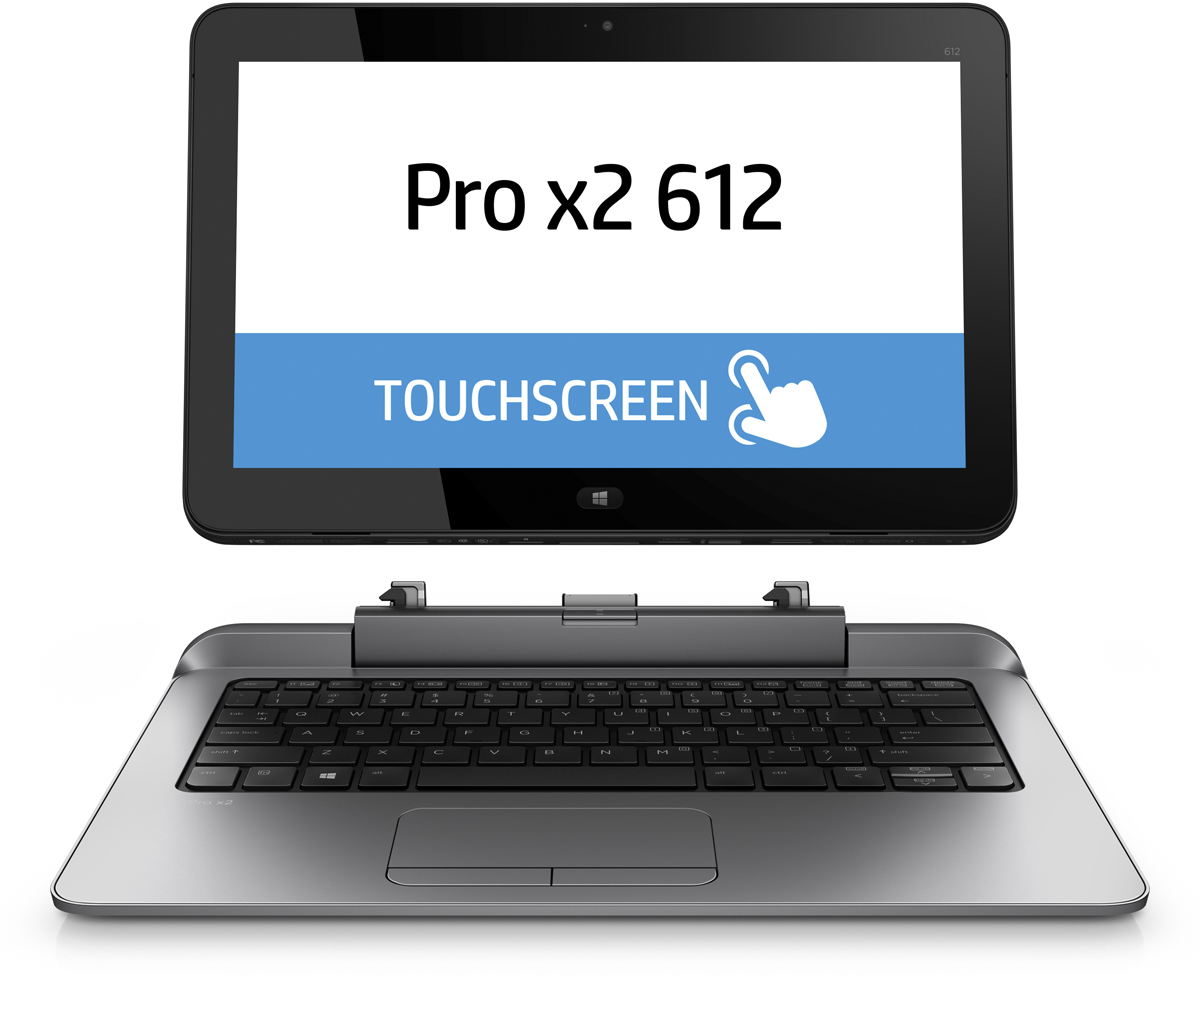 HP Pro x2 612 G1 (F1P92EA)